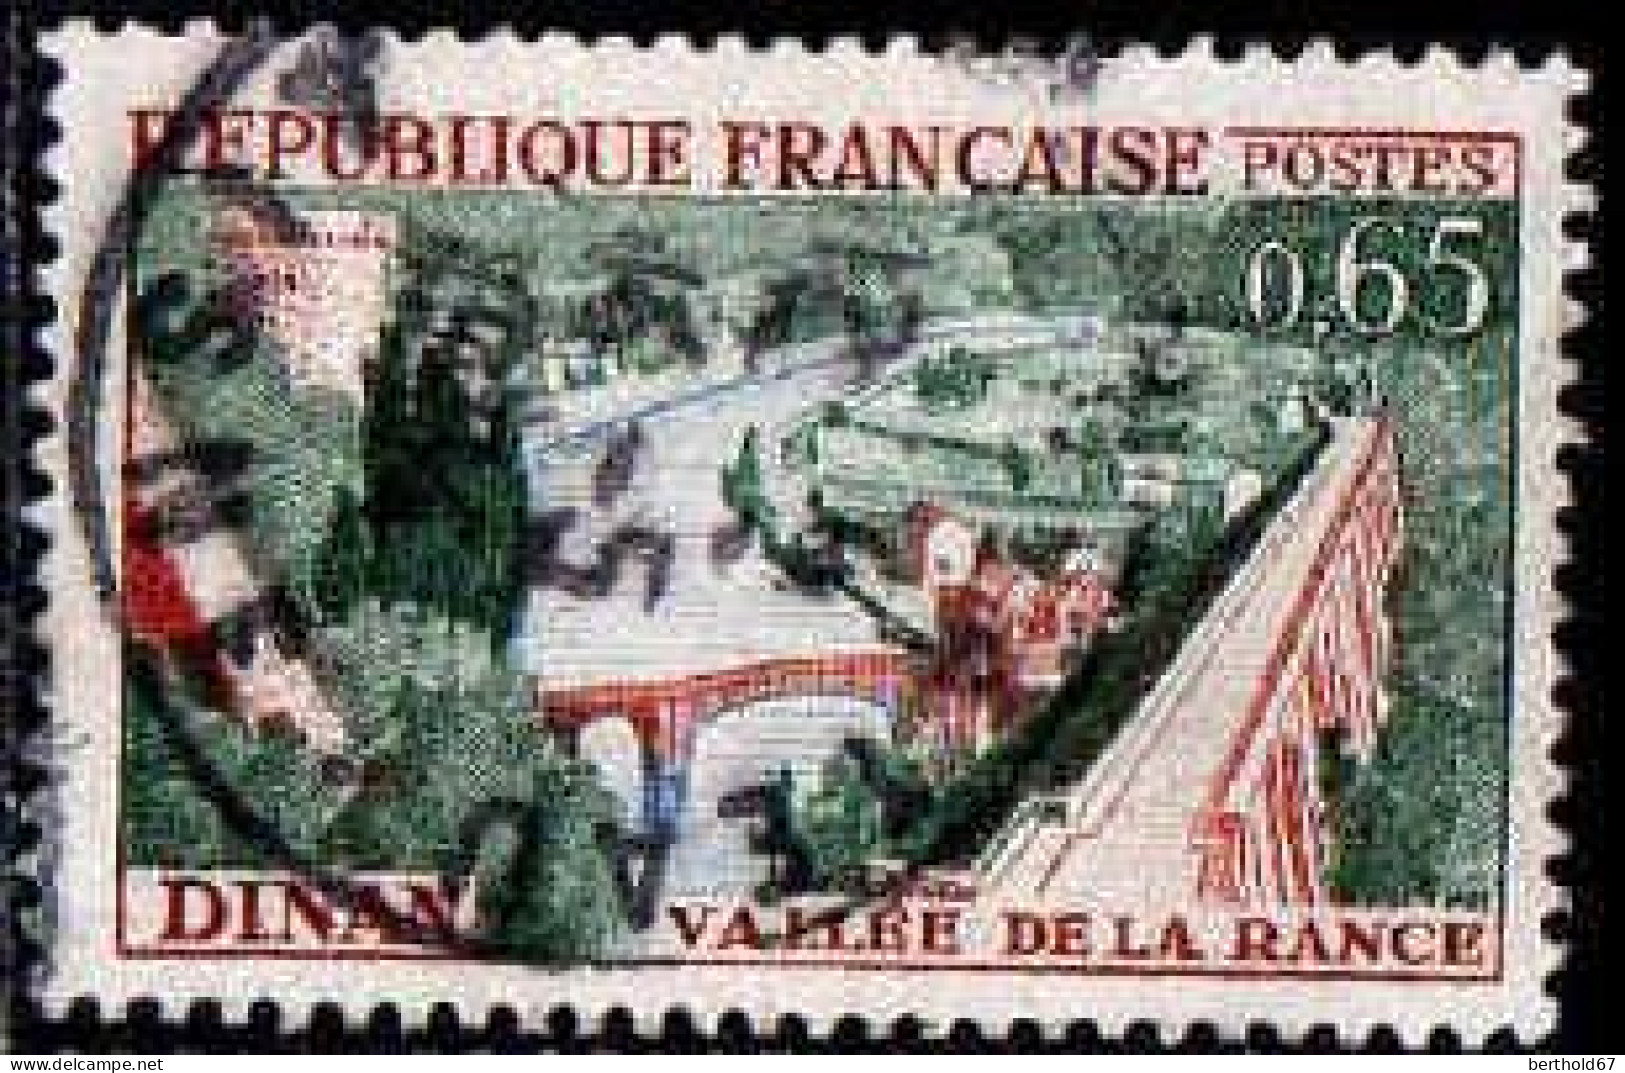 France Poste Obl Yv:1315 Mi:1369 Dinan Vallée De La Rance (cachet Rond) - Usati